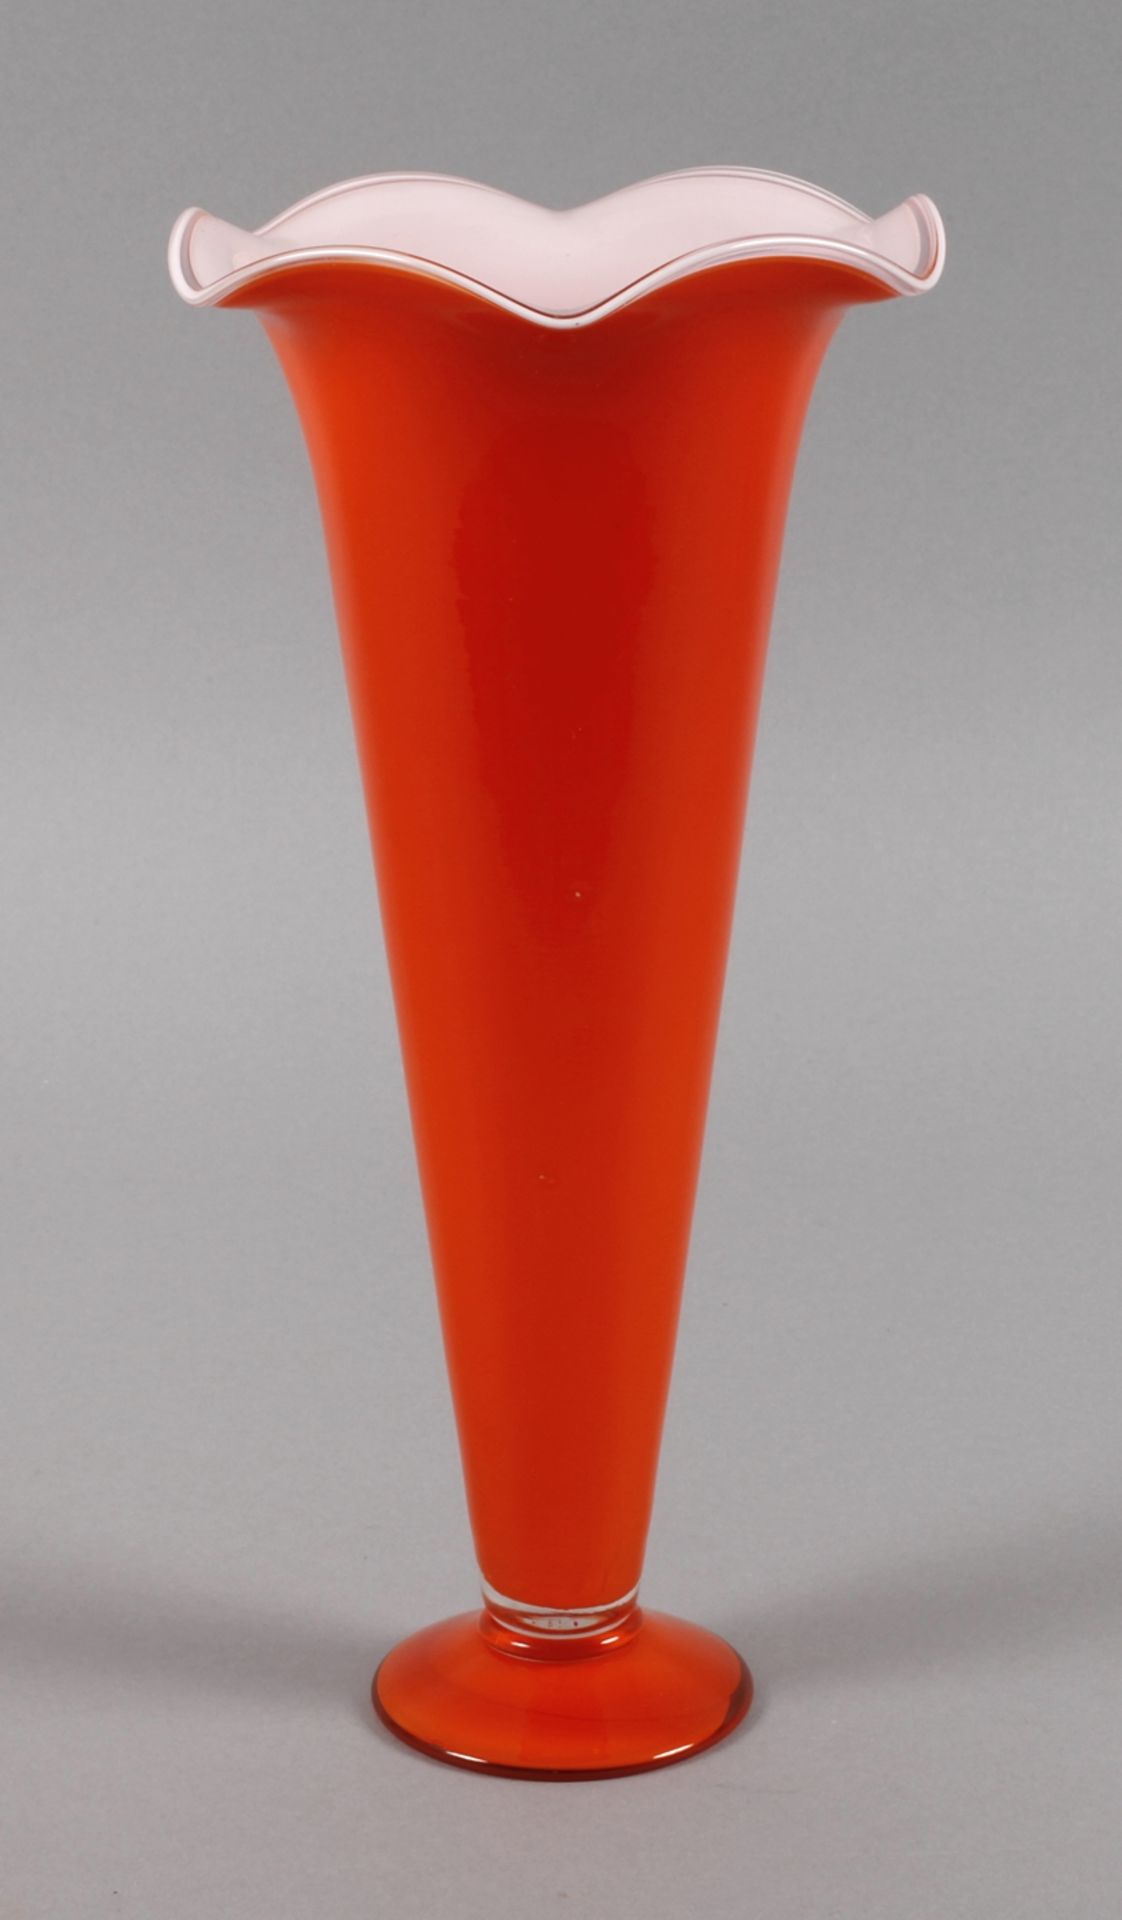 Lötz Wwe. große Vase Tangoum 1920, aus der sogenannten "Tango"-Serie, farbloses Glas, orange und